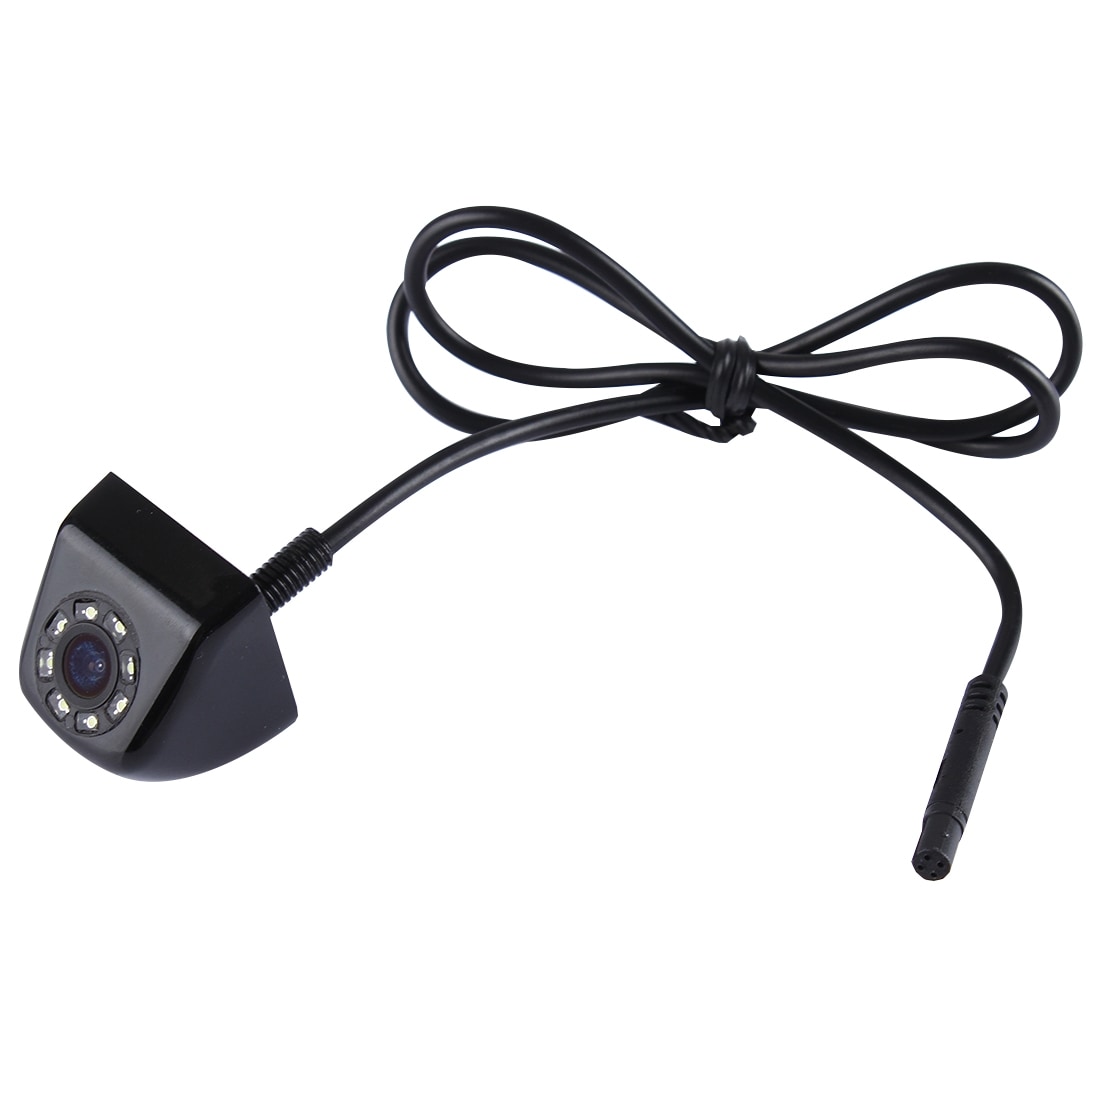 Peruutuskamera LED 0.3MP - Night Vision Laajakulma